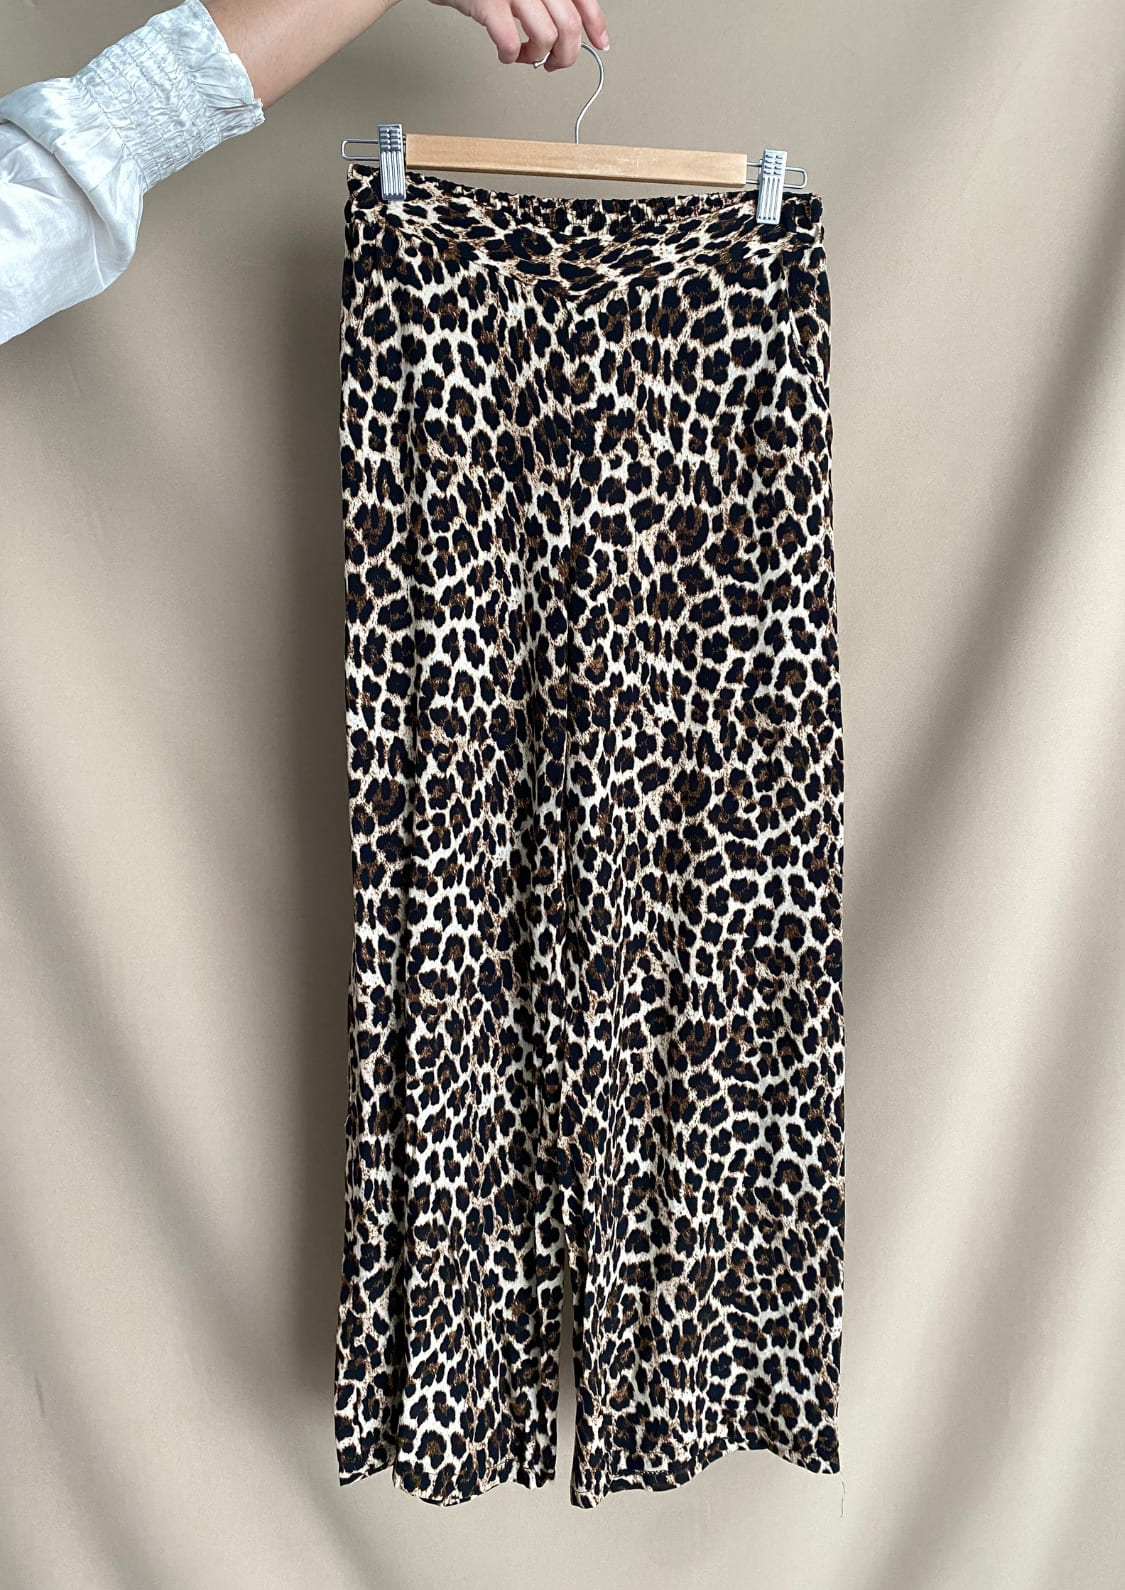 Pantalón Leopardo